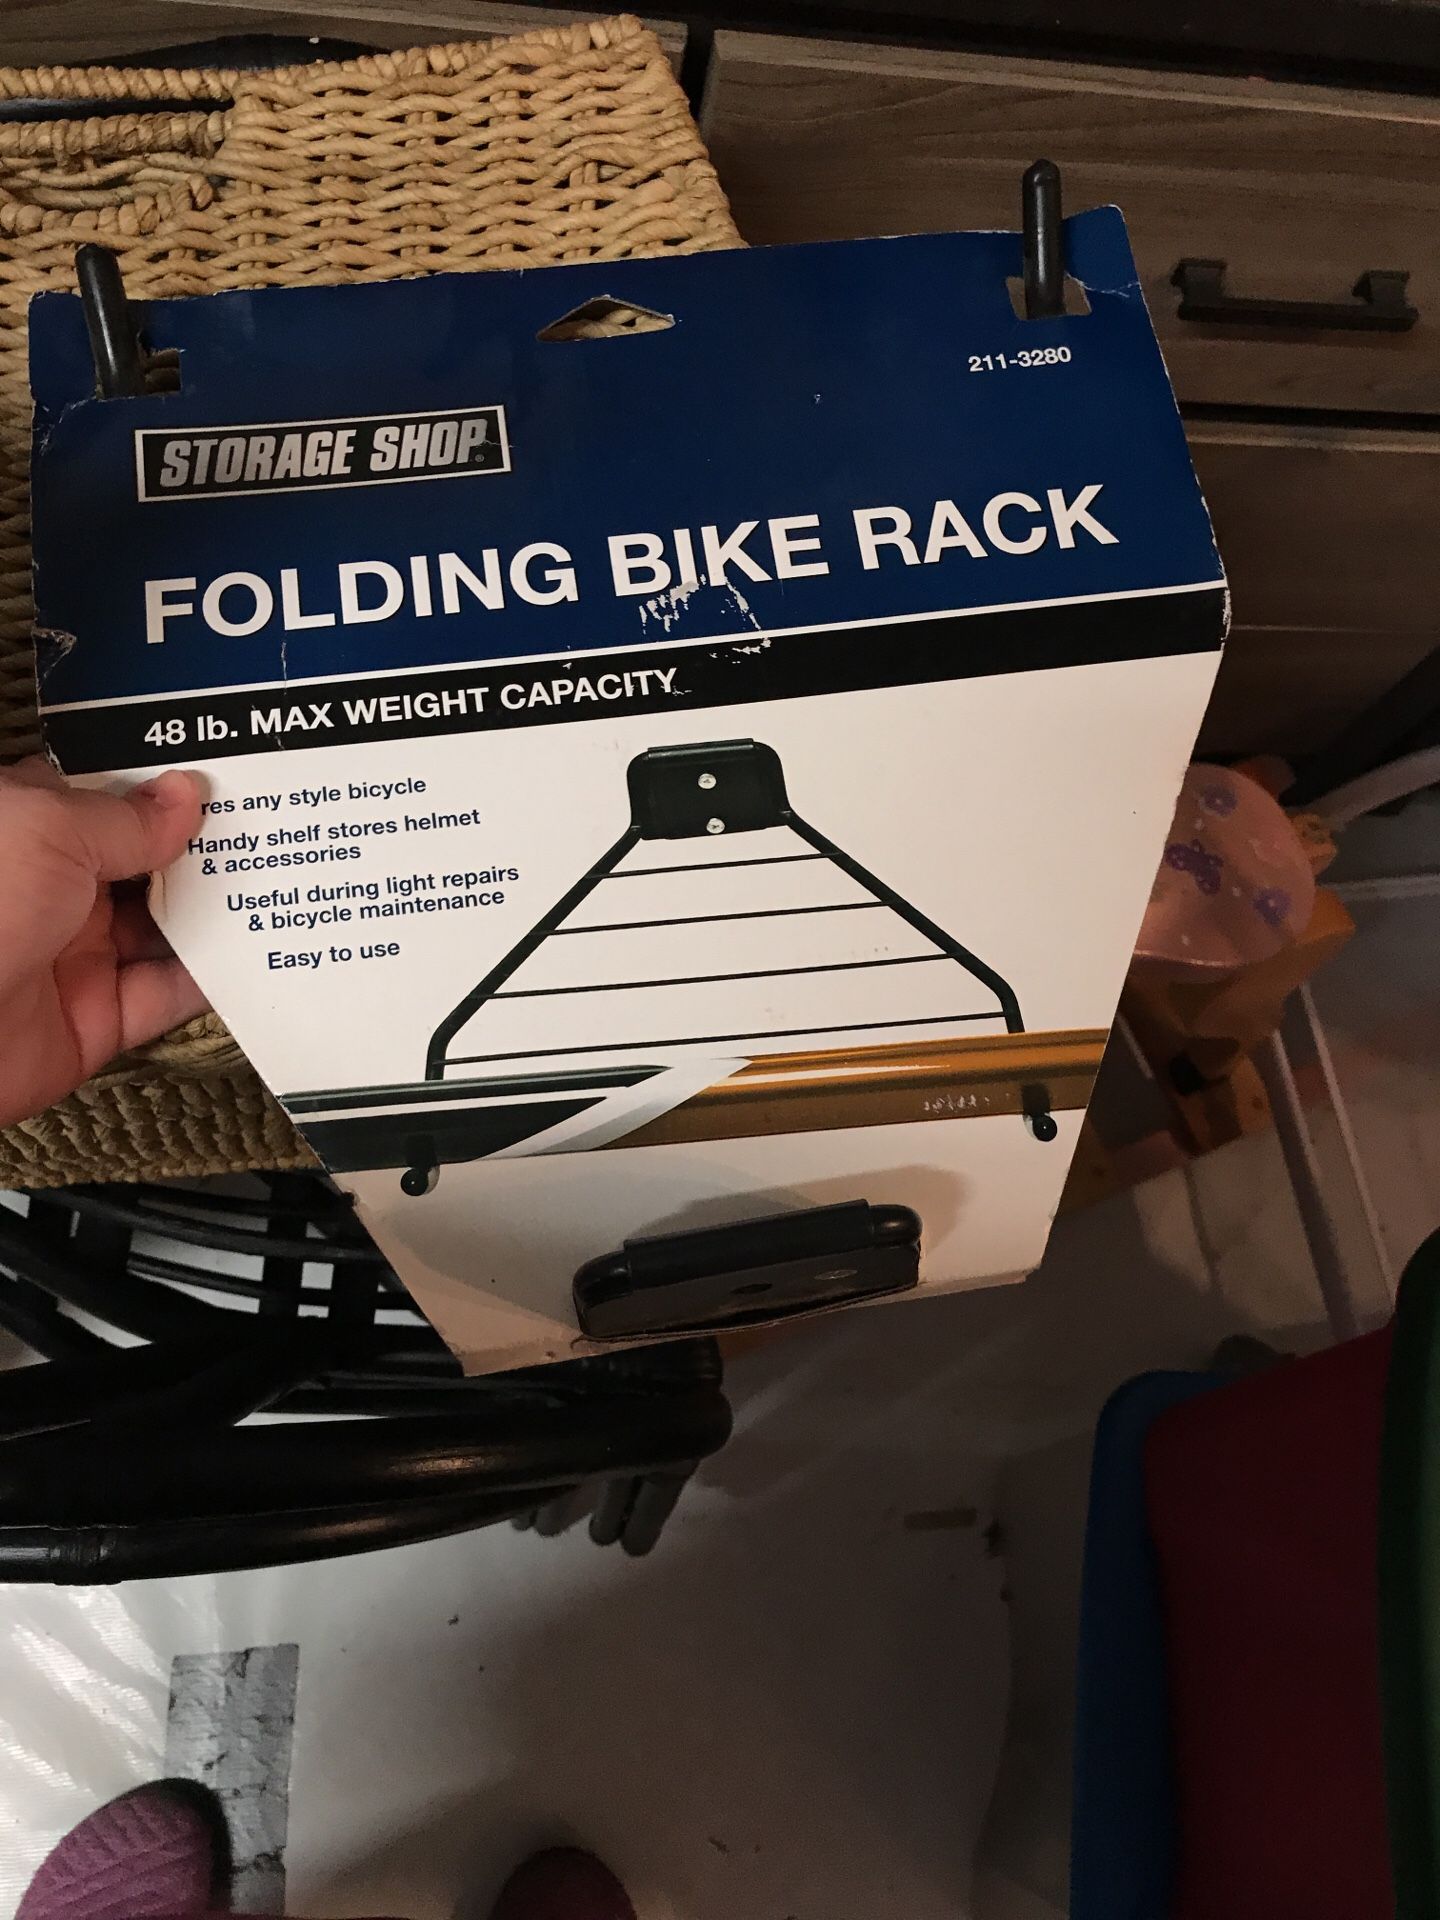 Bike rack folding as shown downtown at